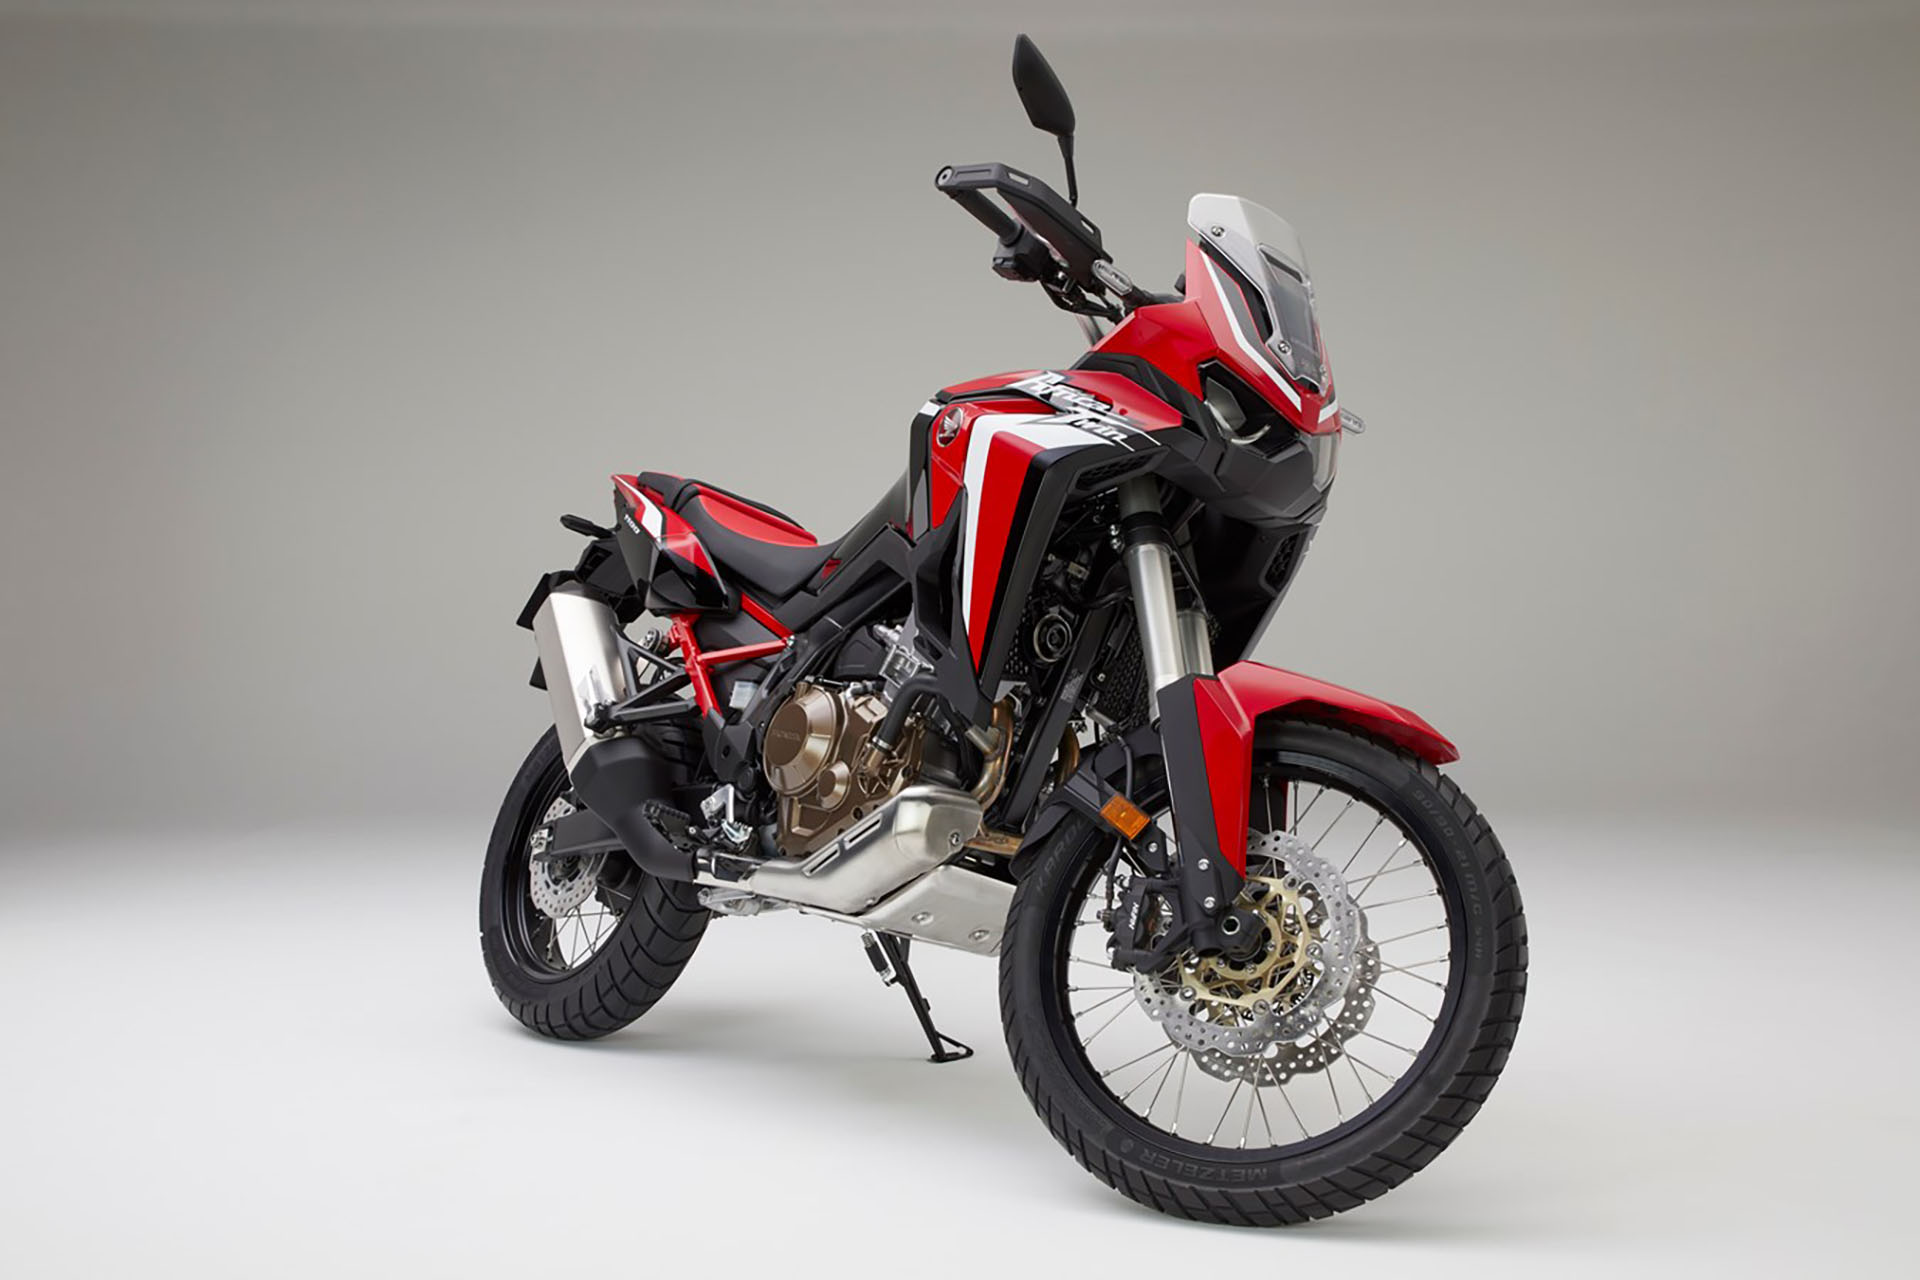 Las motos también llevan el color rojo como emblema (Honda)